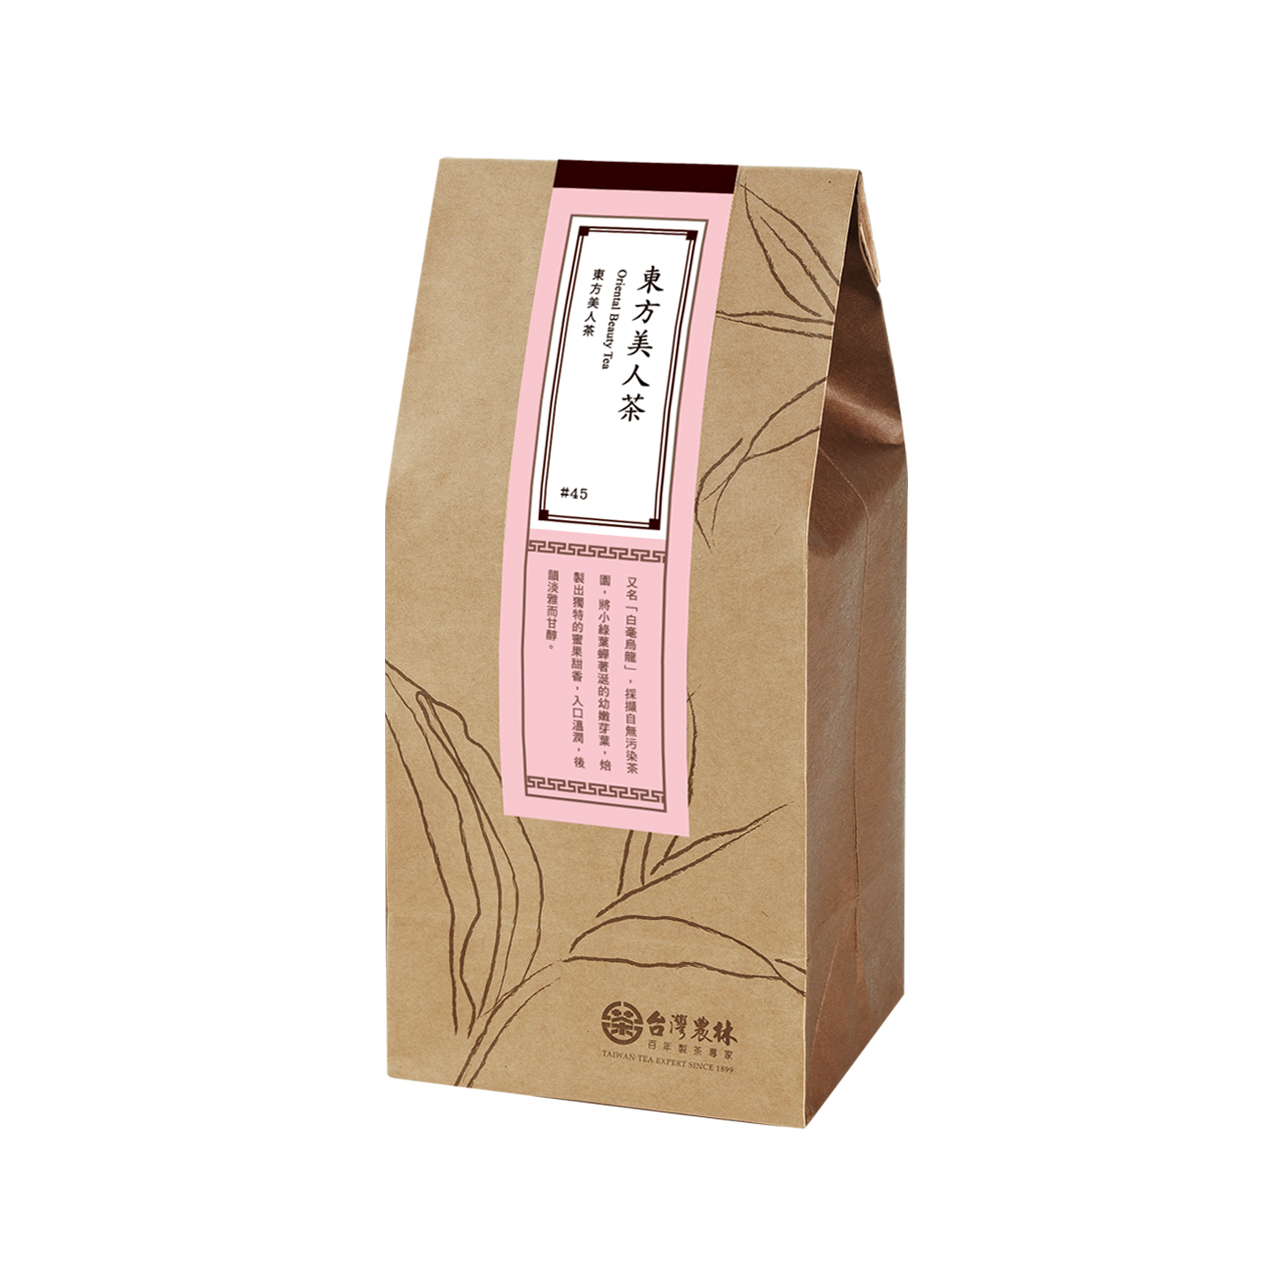 Refill-Elite Miaoli Oriental Beauty Tea